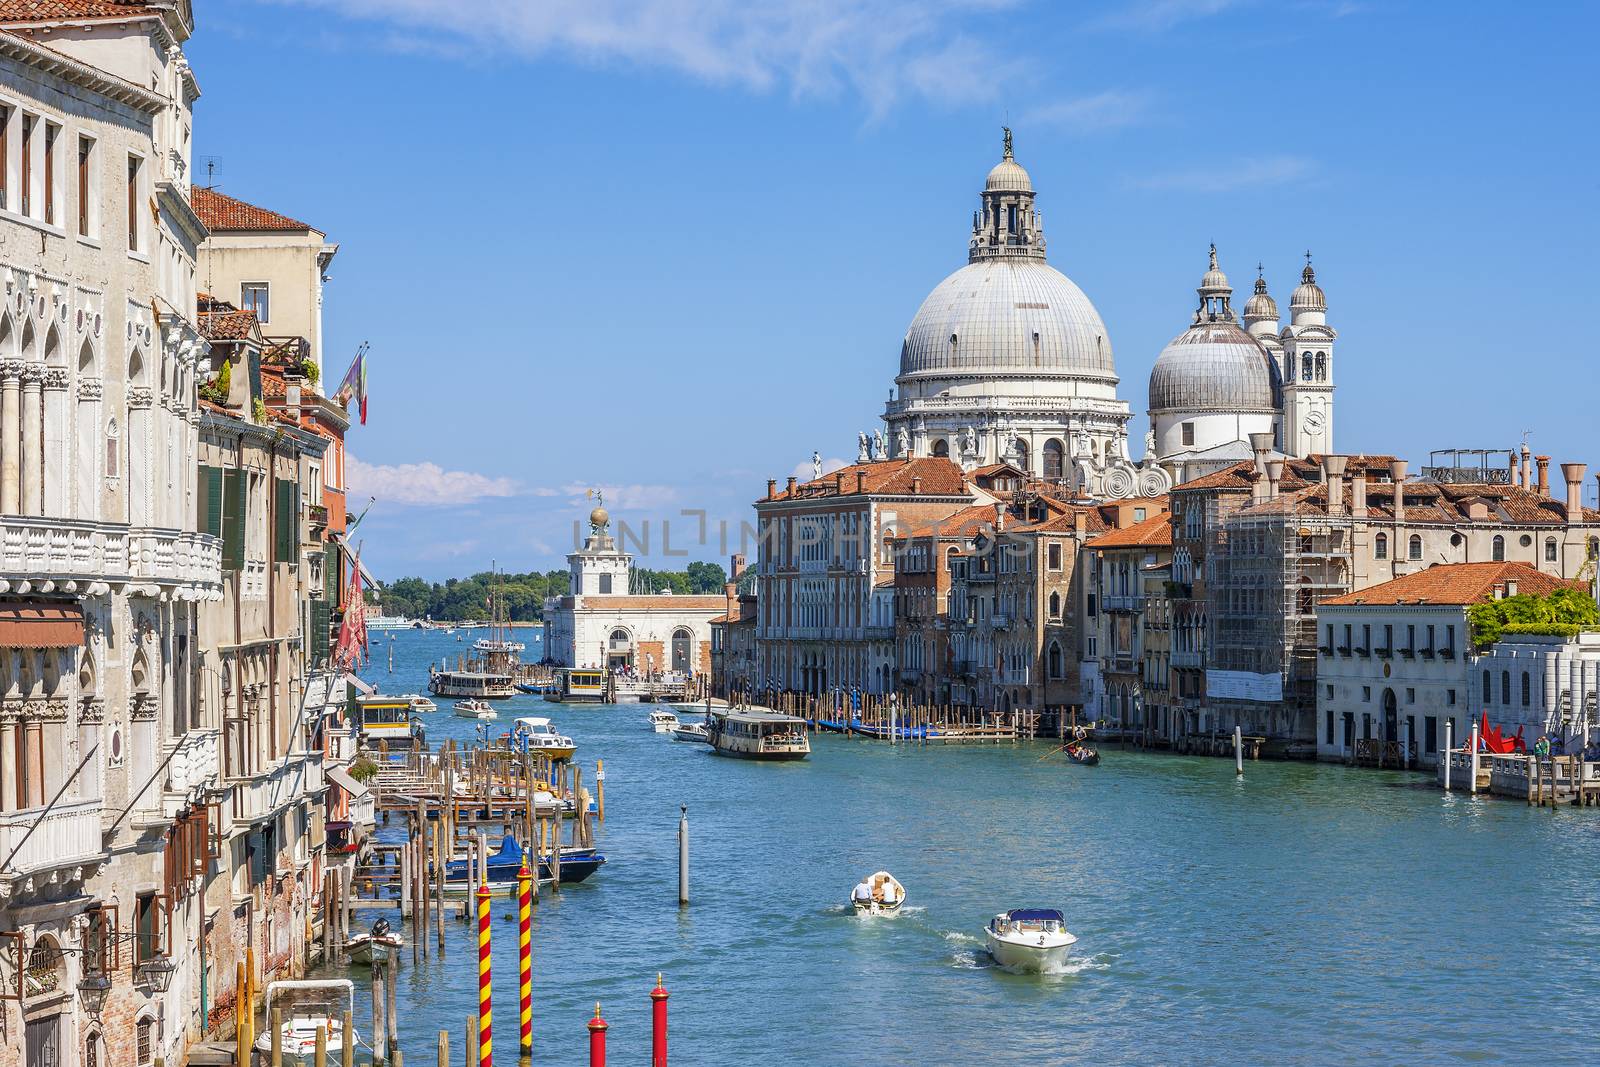 Canal Grande with Basilica di Santa Maria della Salute in the background, Venice, Italy 